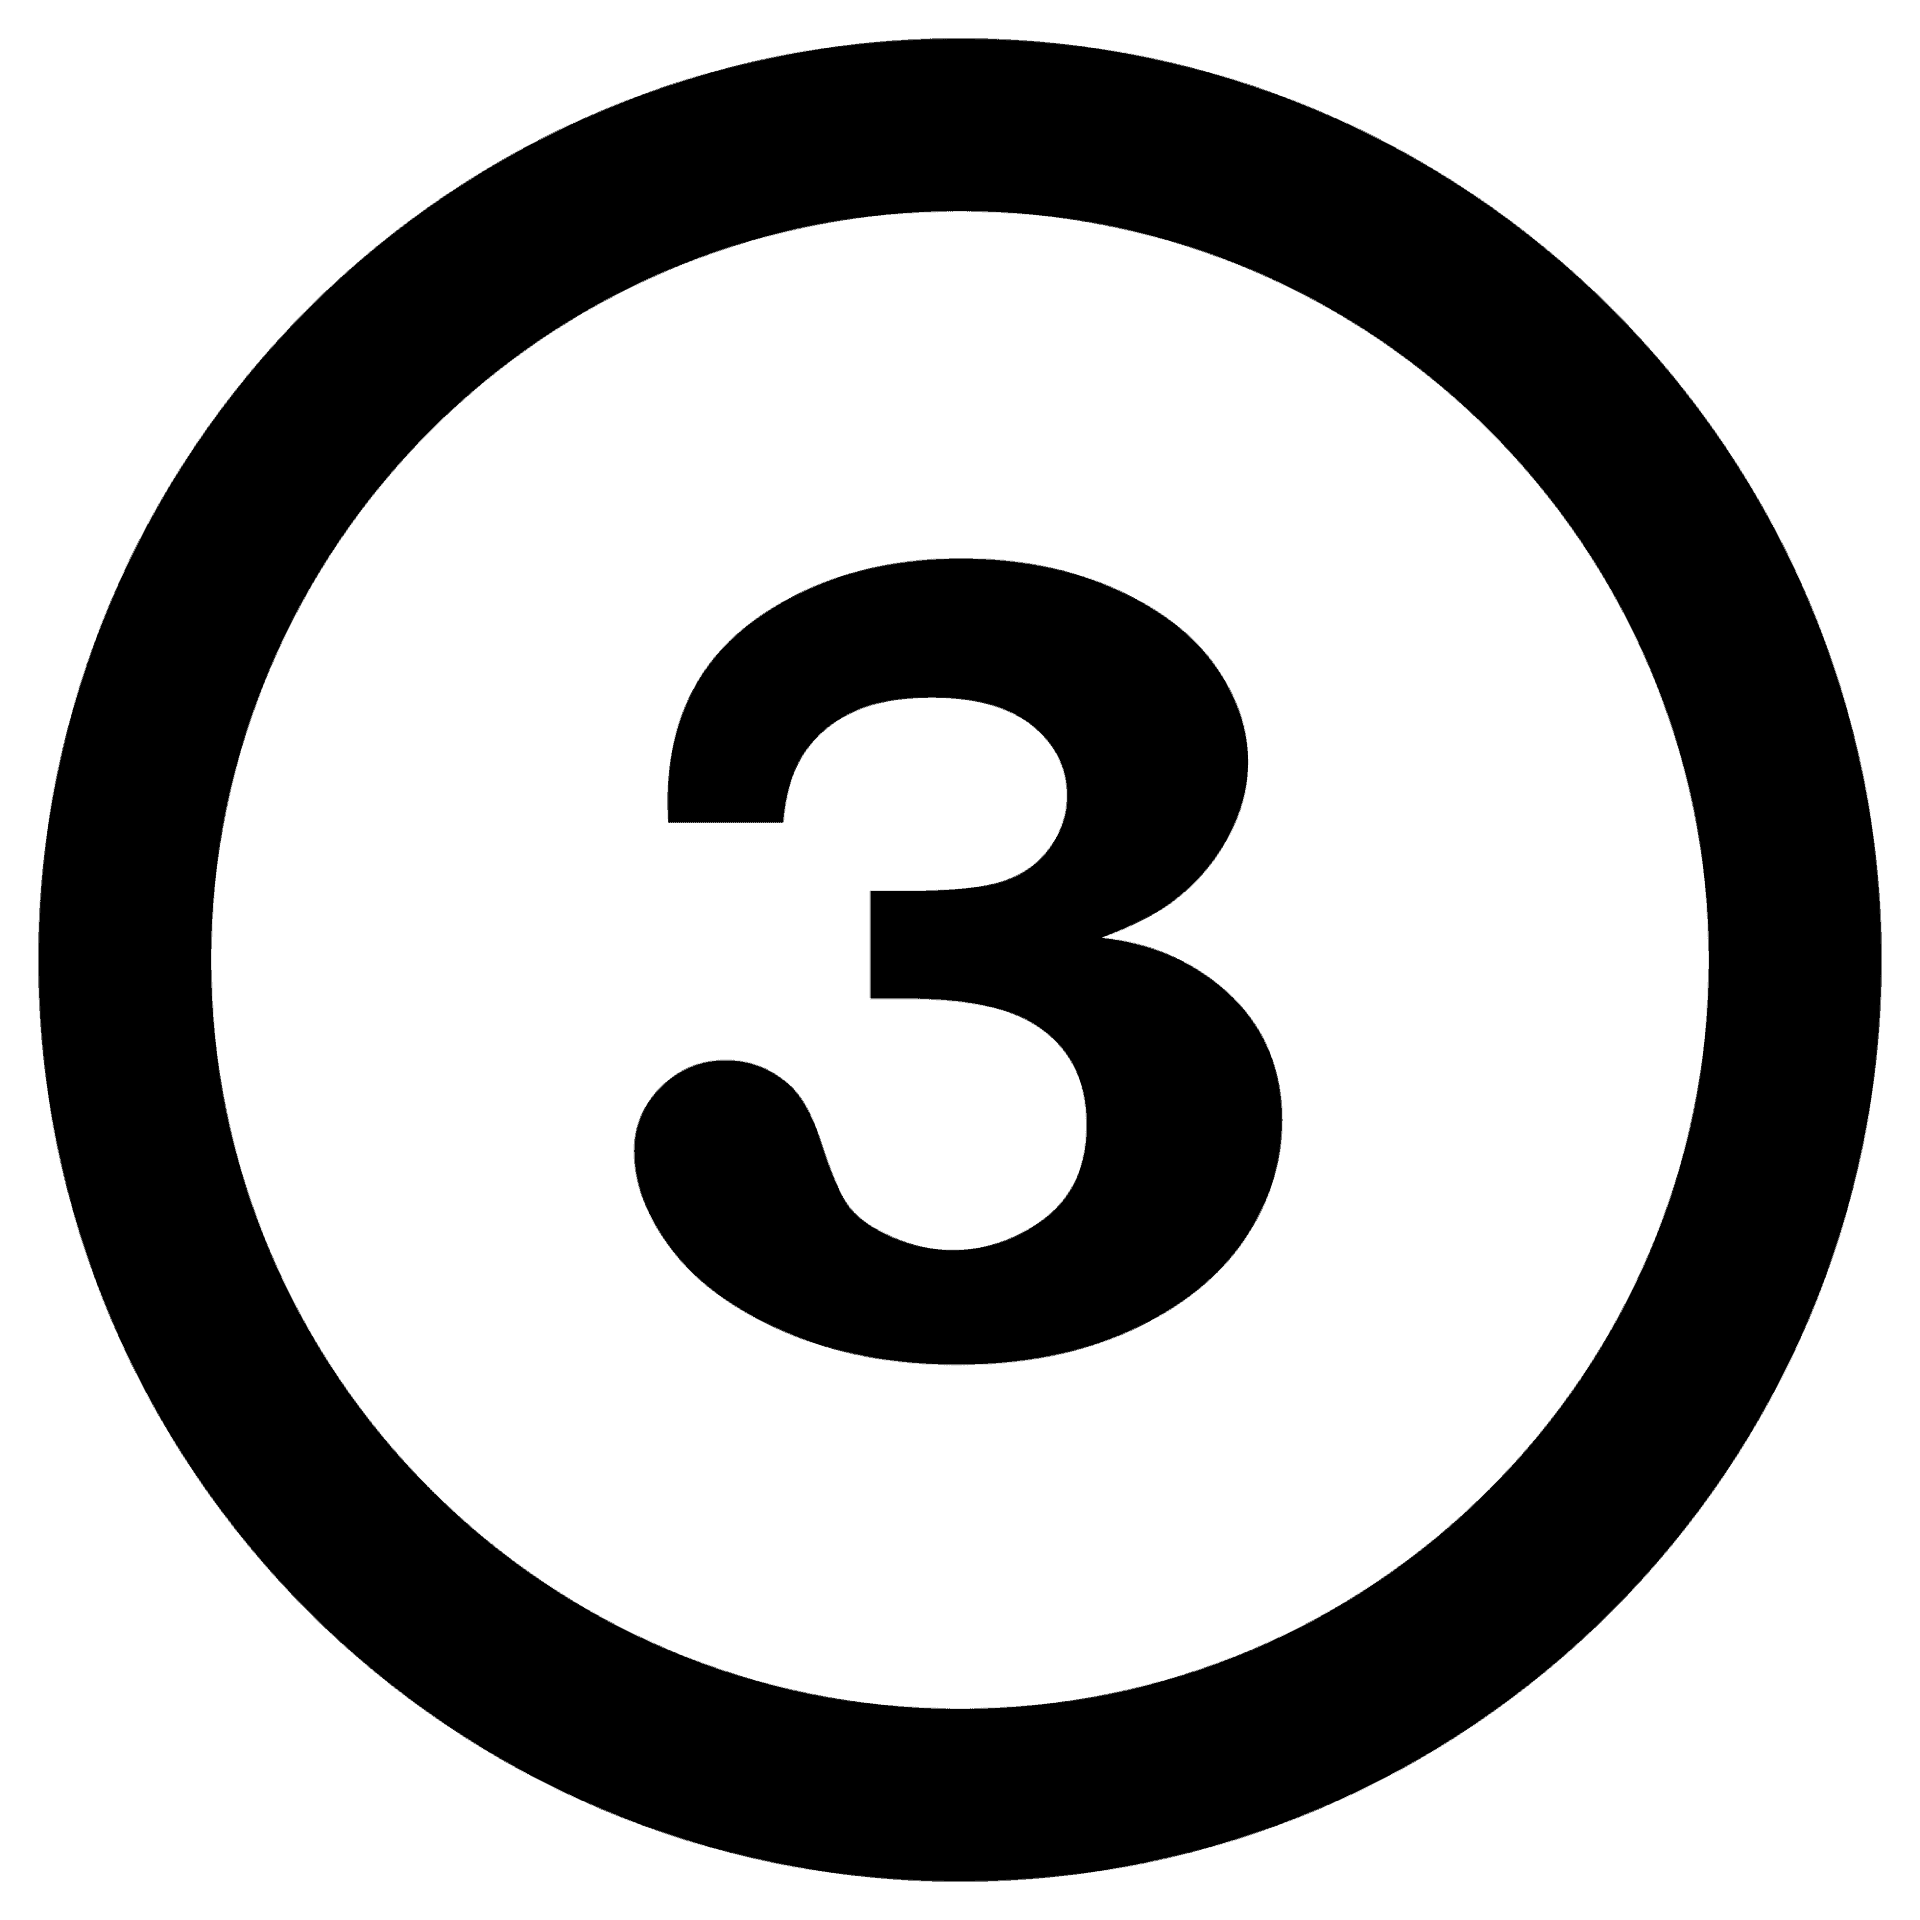 algarismo três em tom preto, dentro de um círculo de mesma cor